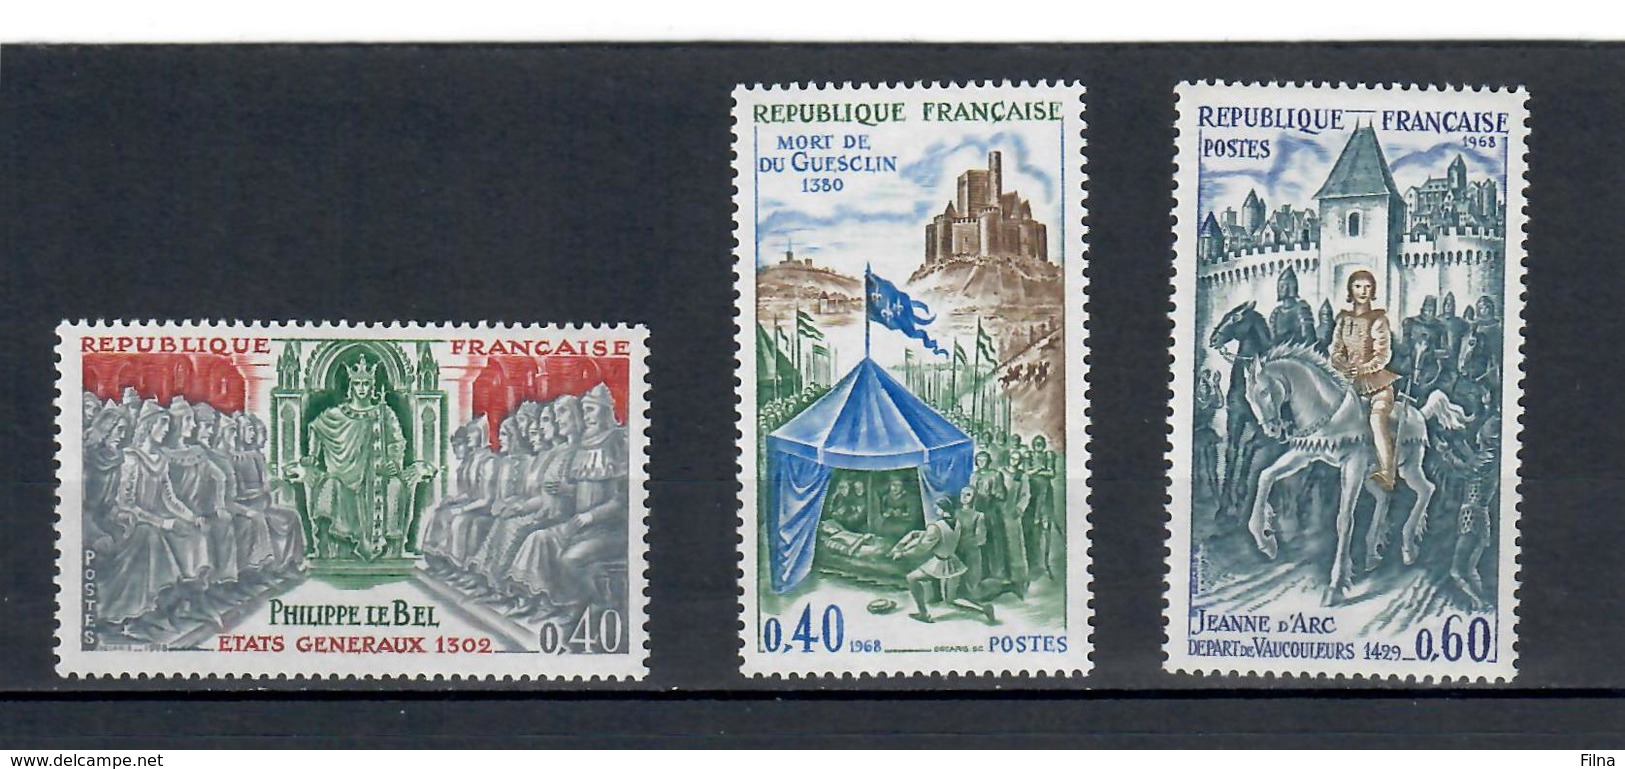 FRANCIA - 1968 - STORIA DELLA FRANCIA 3A SERIE. SERIE COMPLETA MNH** - Unused Stamps